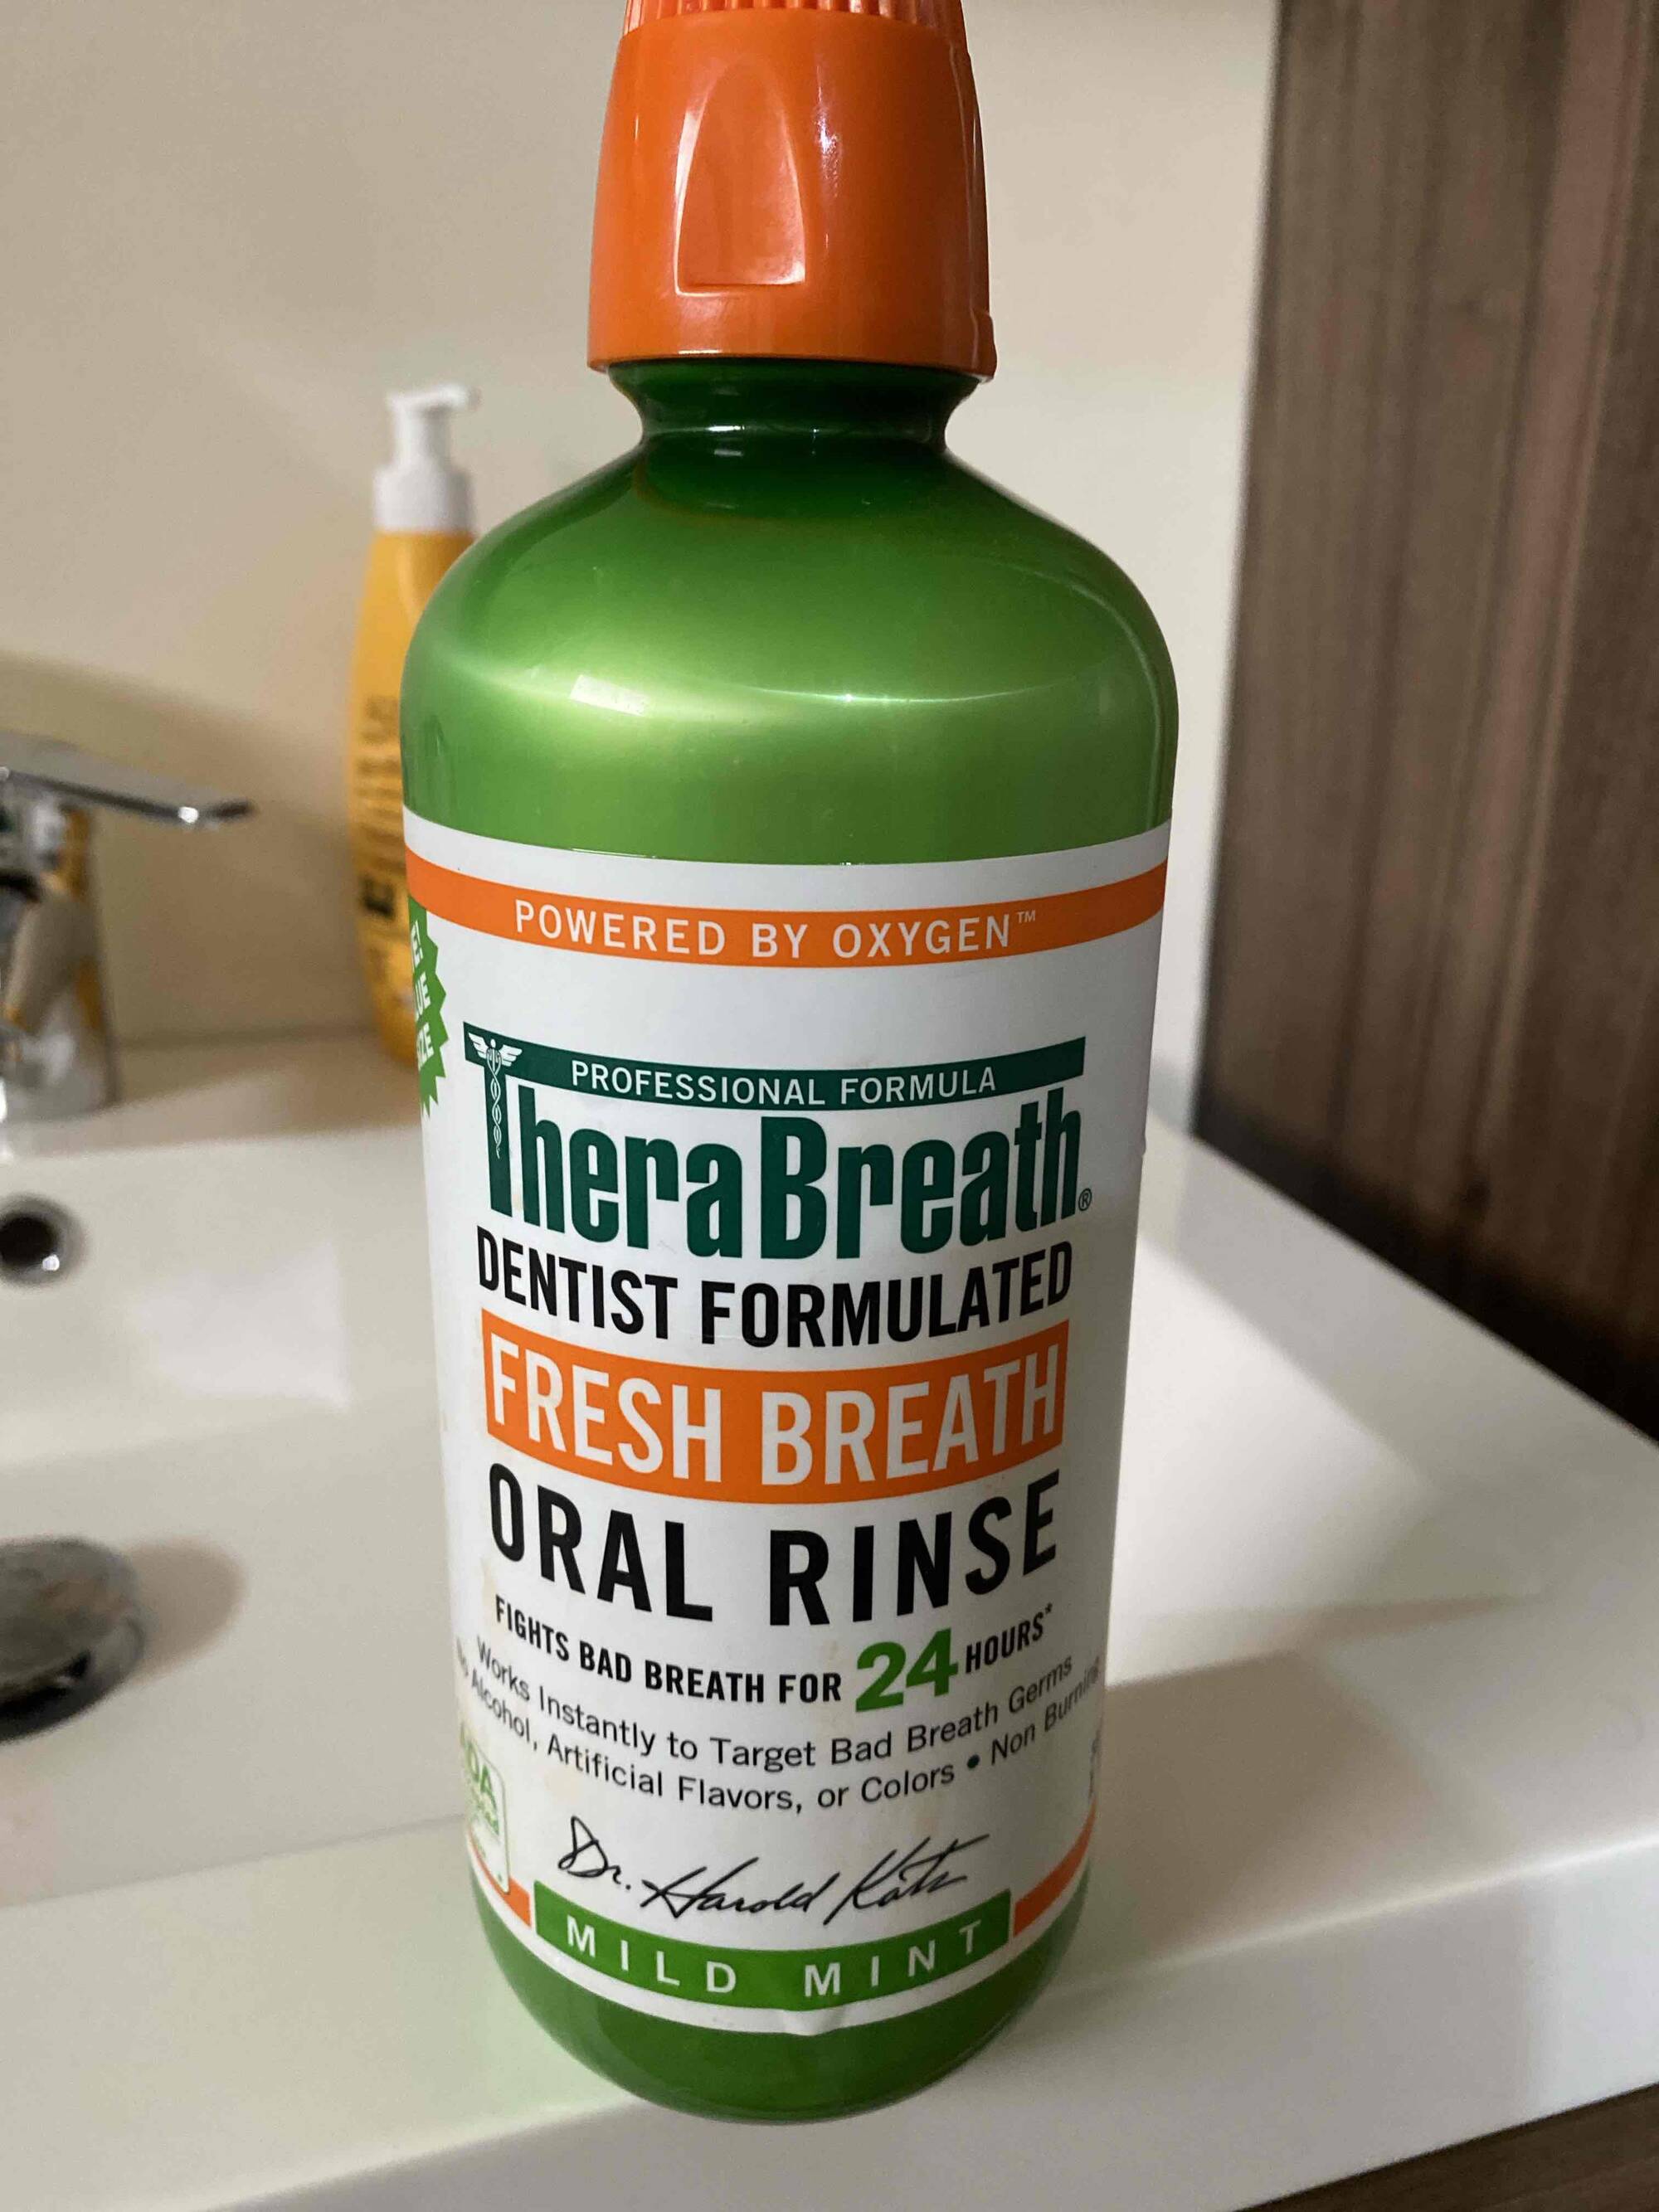 THERABREATH - Fresh breath - Oral rinse mild mint